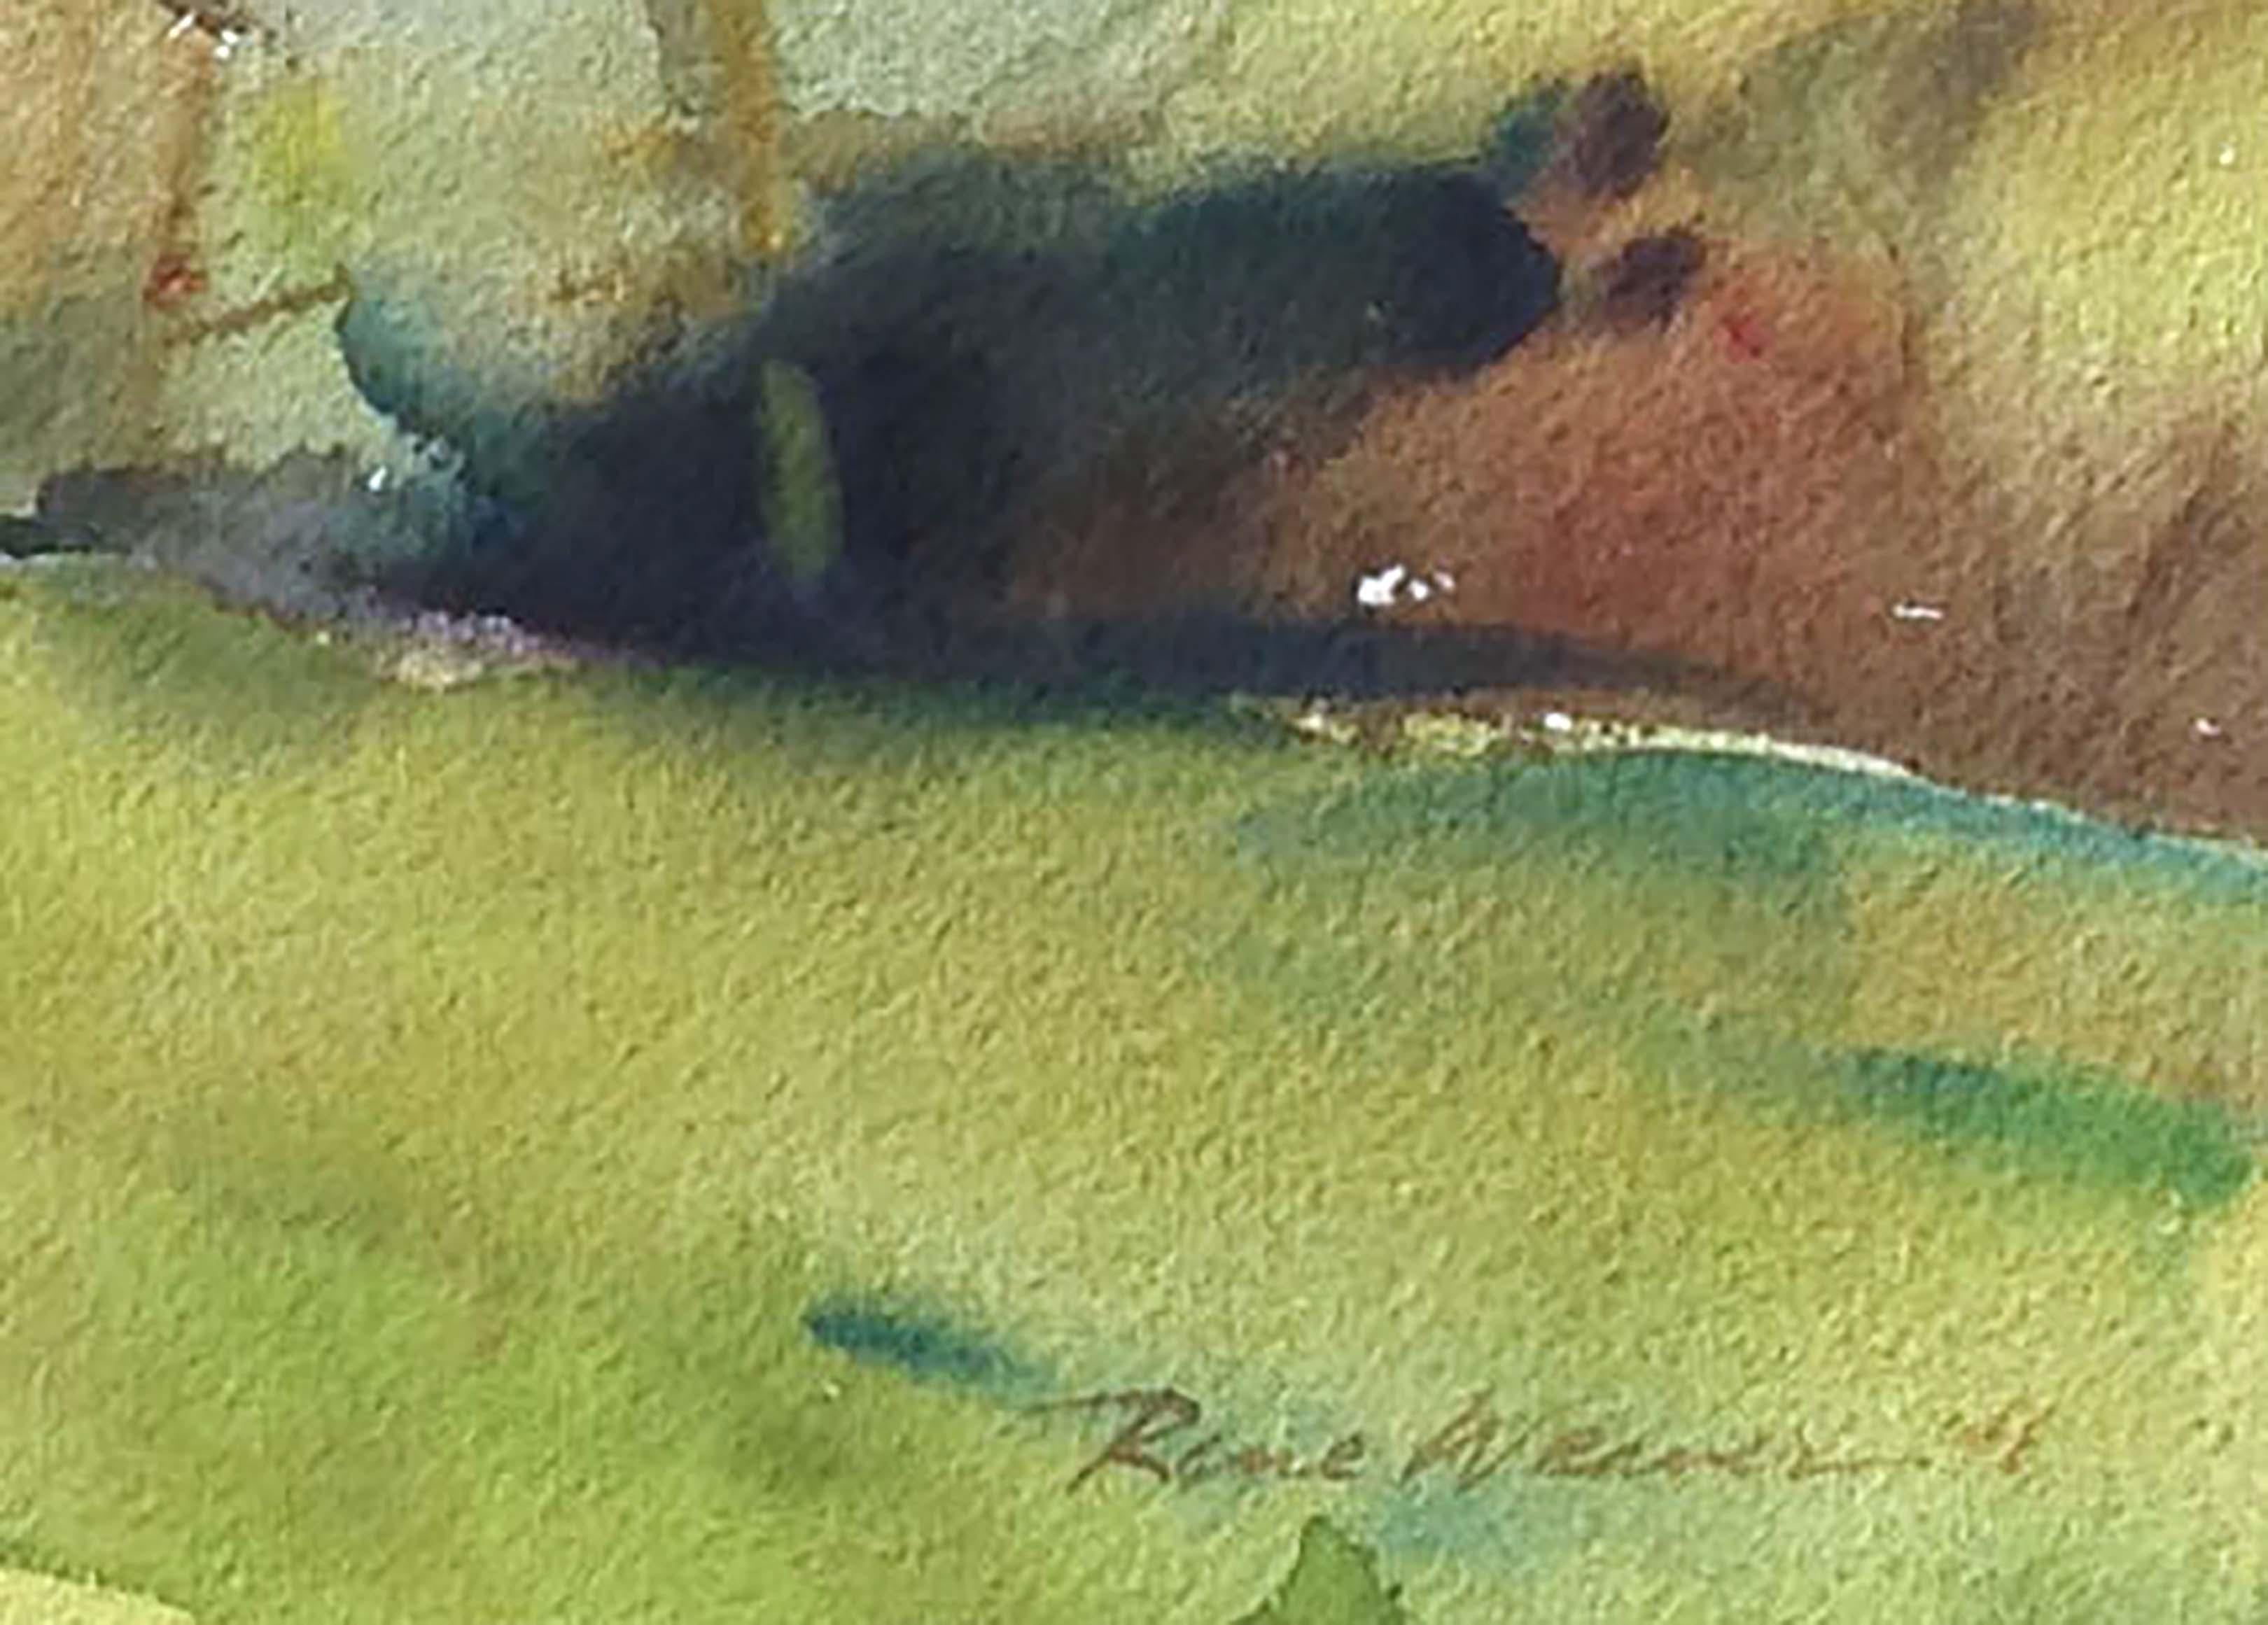 Lebhaftes Aquarell eines Landhauses und einer Baumgruppe in einer ländlichen Landschaft mit sanften grünen Hügeln und Bauernhoftieren in der Ferne, von dem kalifornischen Künstler Rene Weaver (Amerikaner, 1897-1984). Signiert und datiert 